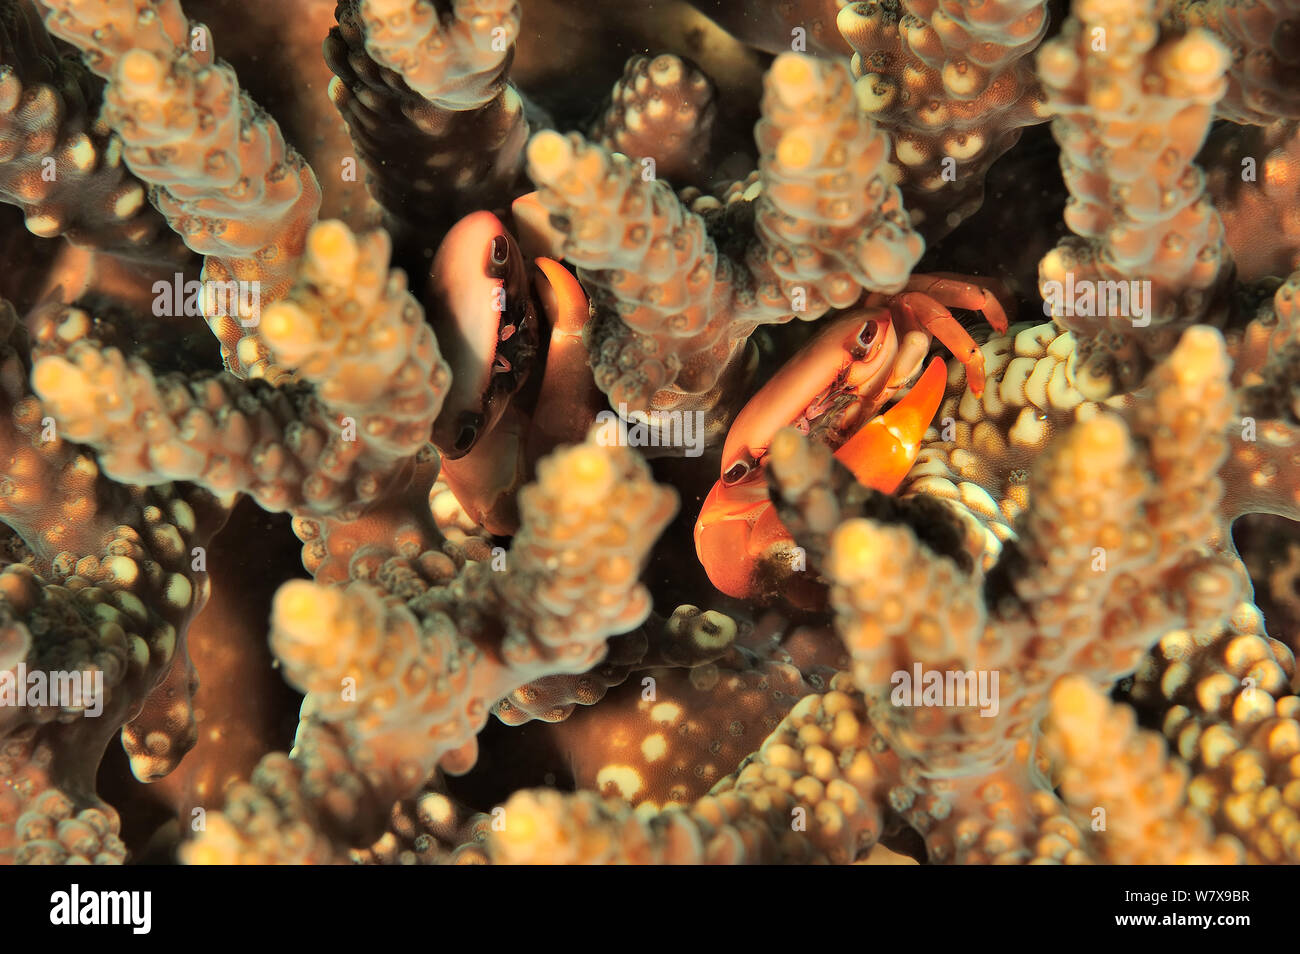 Two Crabs (Tetralia cavimana) hidden in a hard coral, coast of Dhofar and Hallaniyat islands, Oman. Arabian Sea. Stock Photo